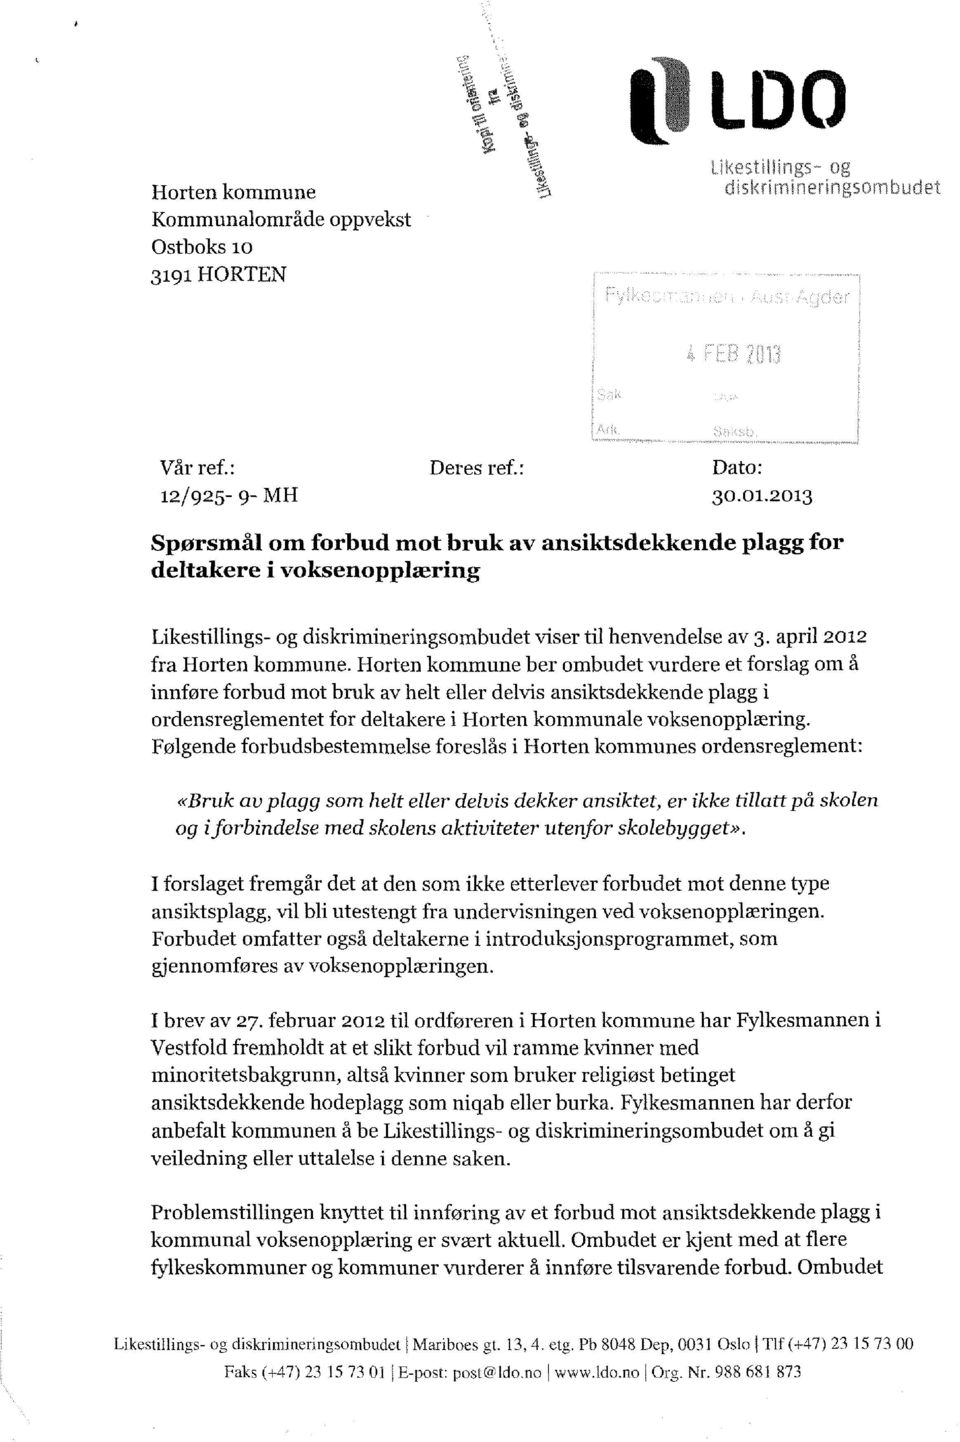 Horten kommune ber ombudet vurdere et forslag om å innfore forbud mot bruk av helt eller delvis ansiktsdekkendeplagg i ordensreglementet for deltakere i Horten kommunalevoksenopplæring.